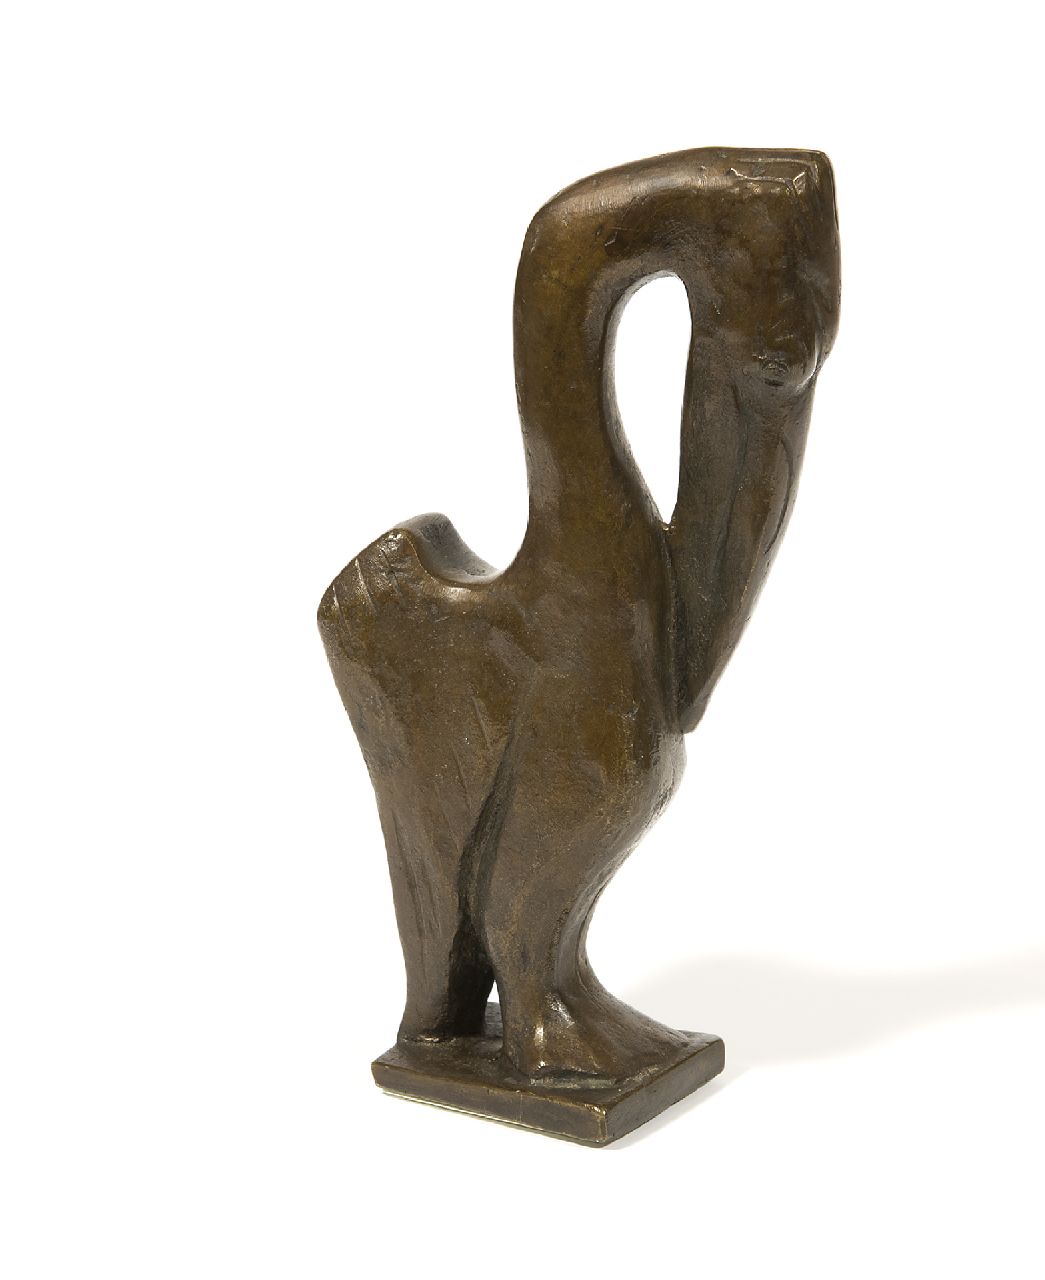 Baisch R.C.  | Rudolf Christian Baisch, Kleine pelikaan I, bruin gepatineerd brons 16,6 x 8,5 cm, gesigneerd op basis met initialen